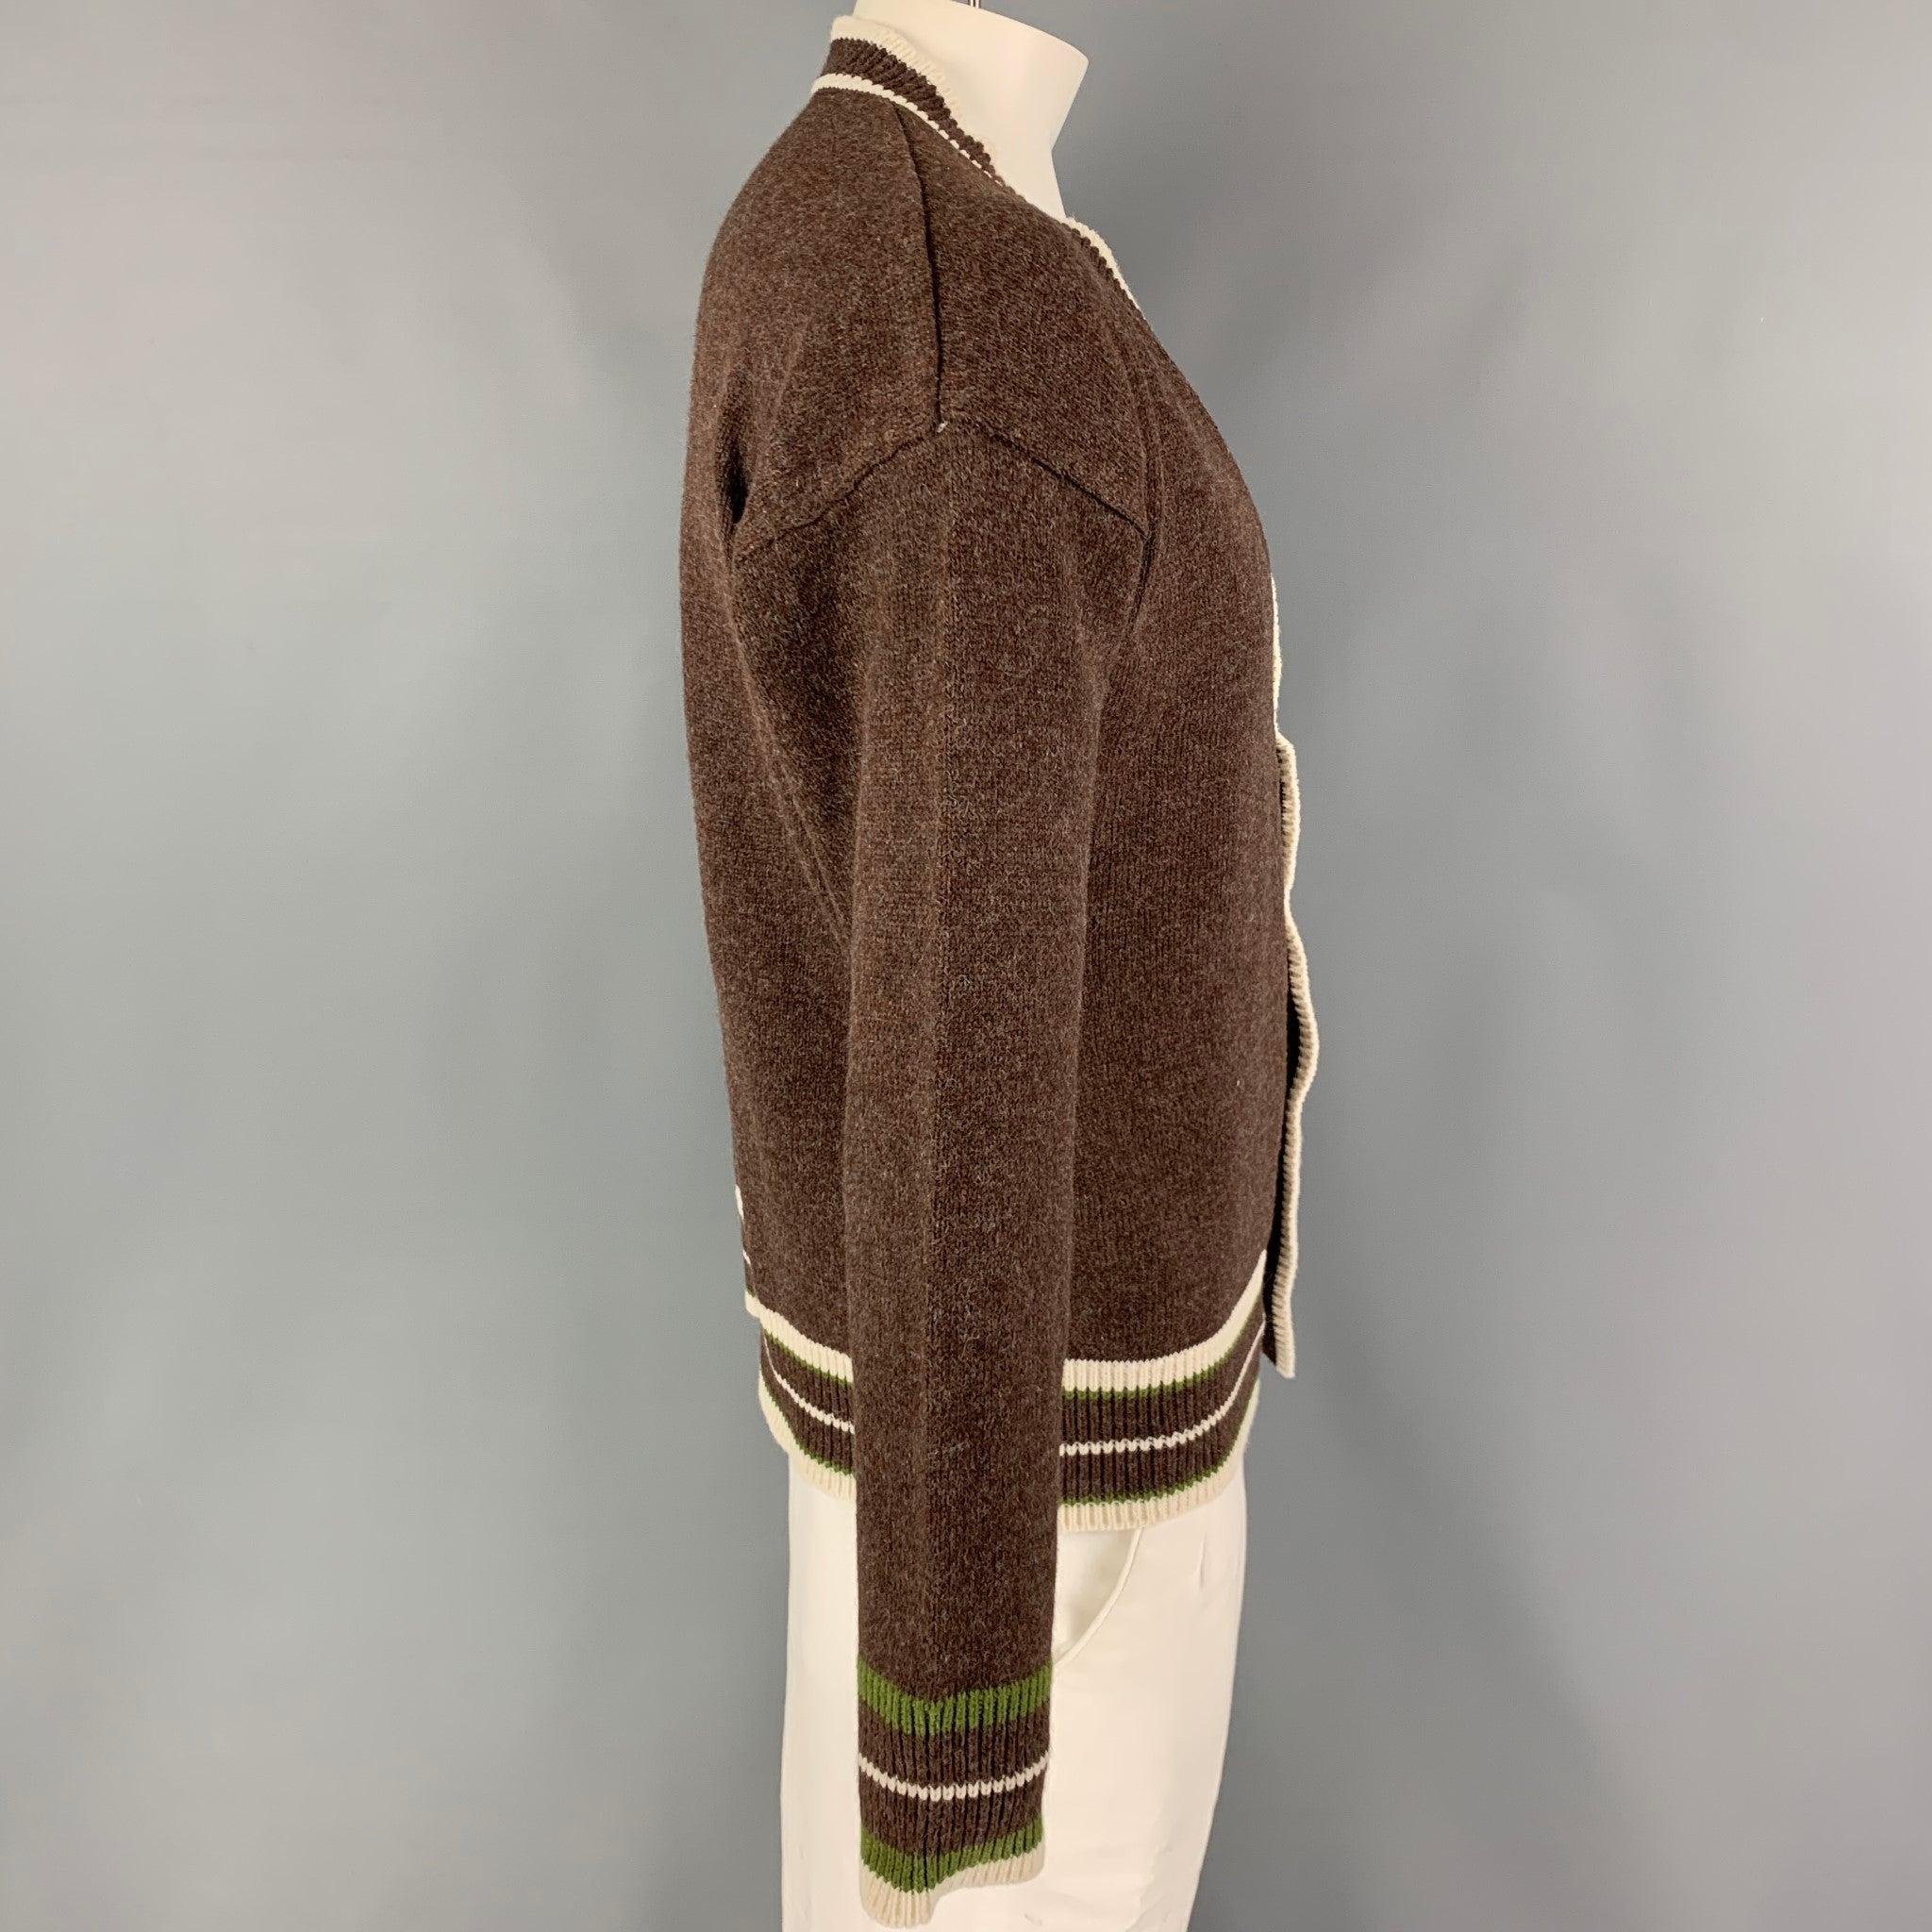 Le cardigan de KITON est en coton tricoté marron, avec une bordure contrastée crème et une fermeture boutonnée. Fabriquées en Italie.
Neuf avec étiquettes.
 

Marqué :   M/50 

Mesures : 
 
Epaule : 24 pouces Poitrine : 46 pouces Manche : 23 pouces